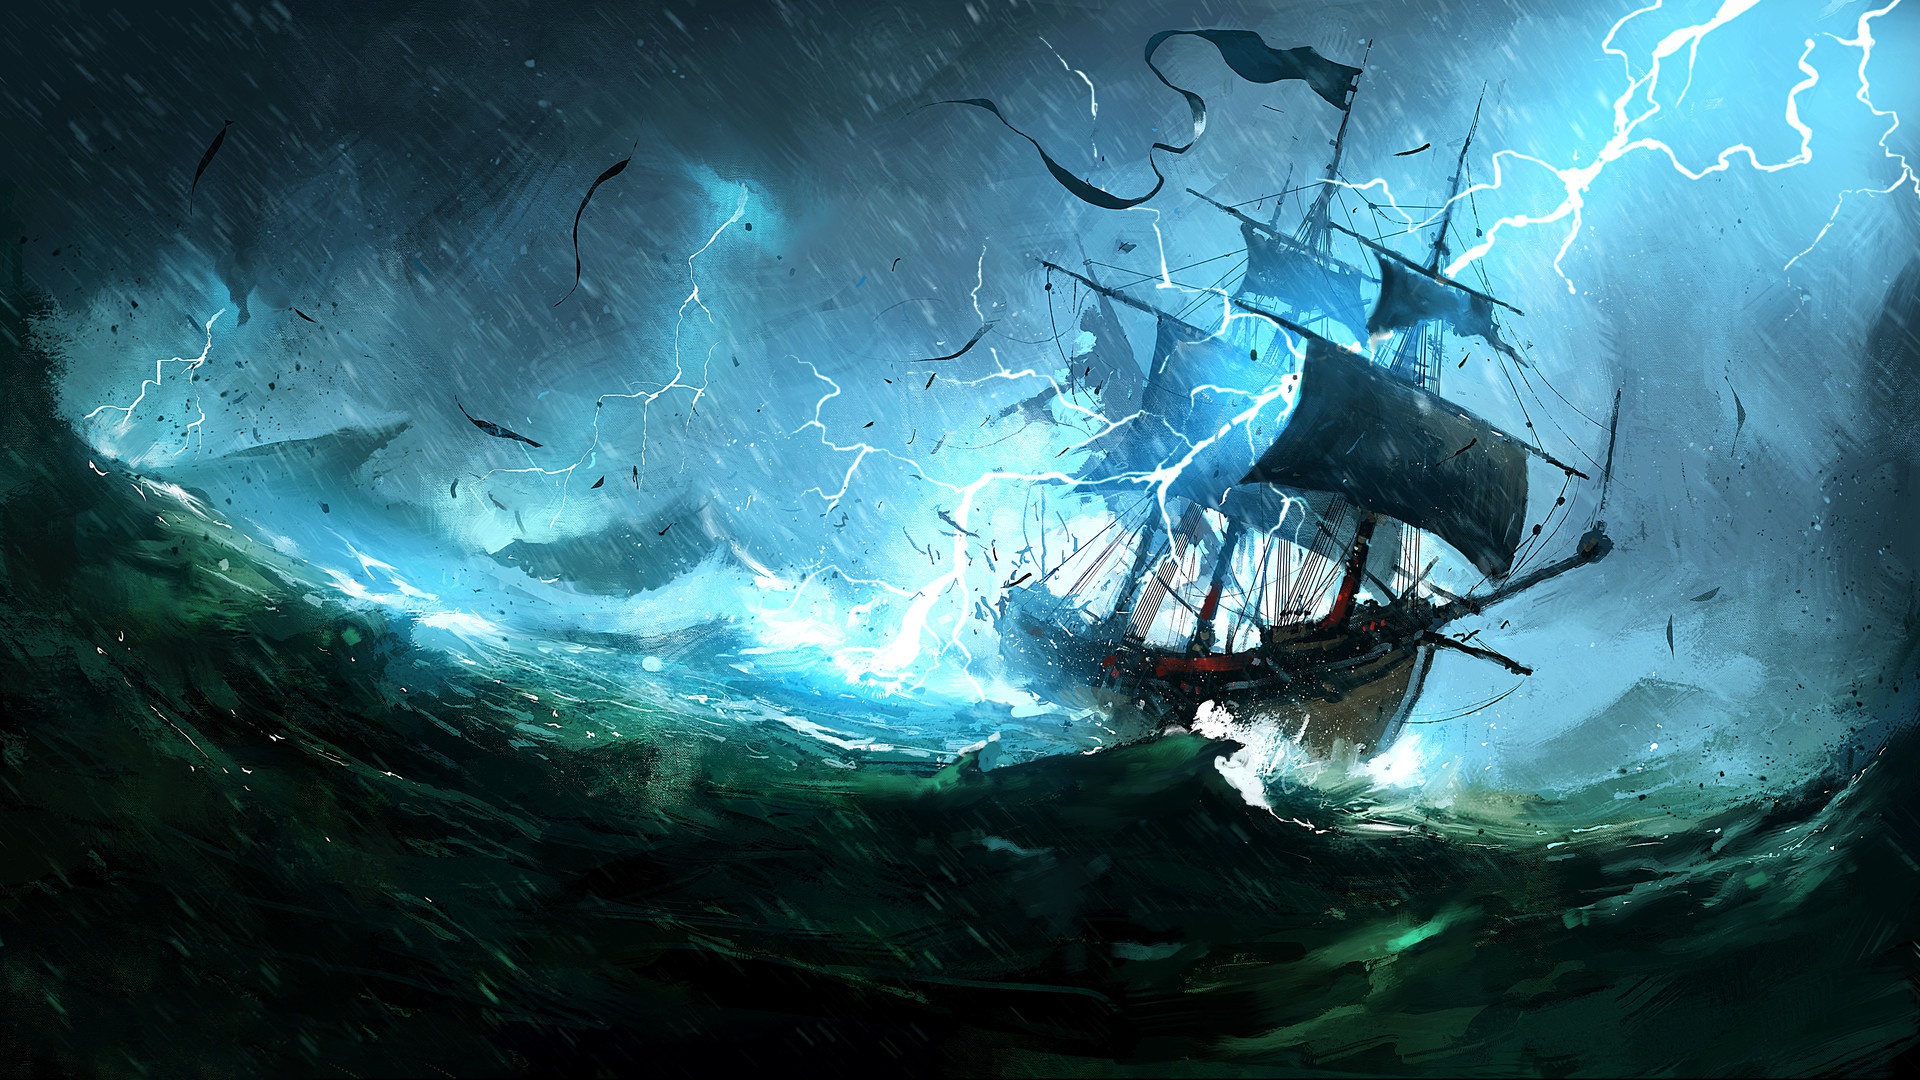 Wallpaper Of Lightning, Ship, Fantasy, Sea, Storm Background - Sailing Ship In A Storm - HD Wallpaper 